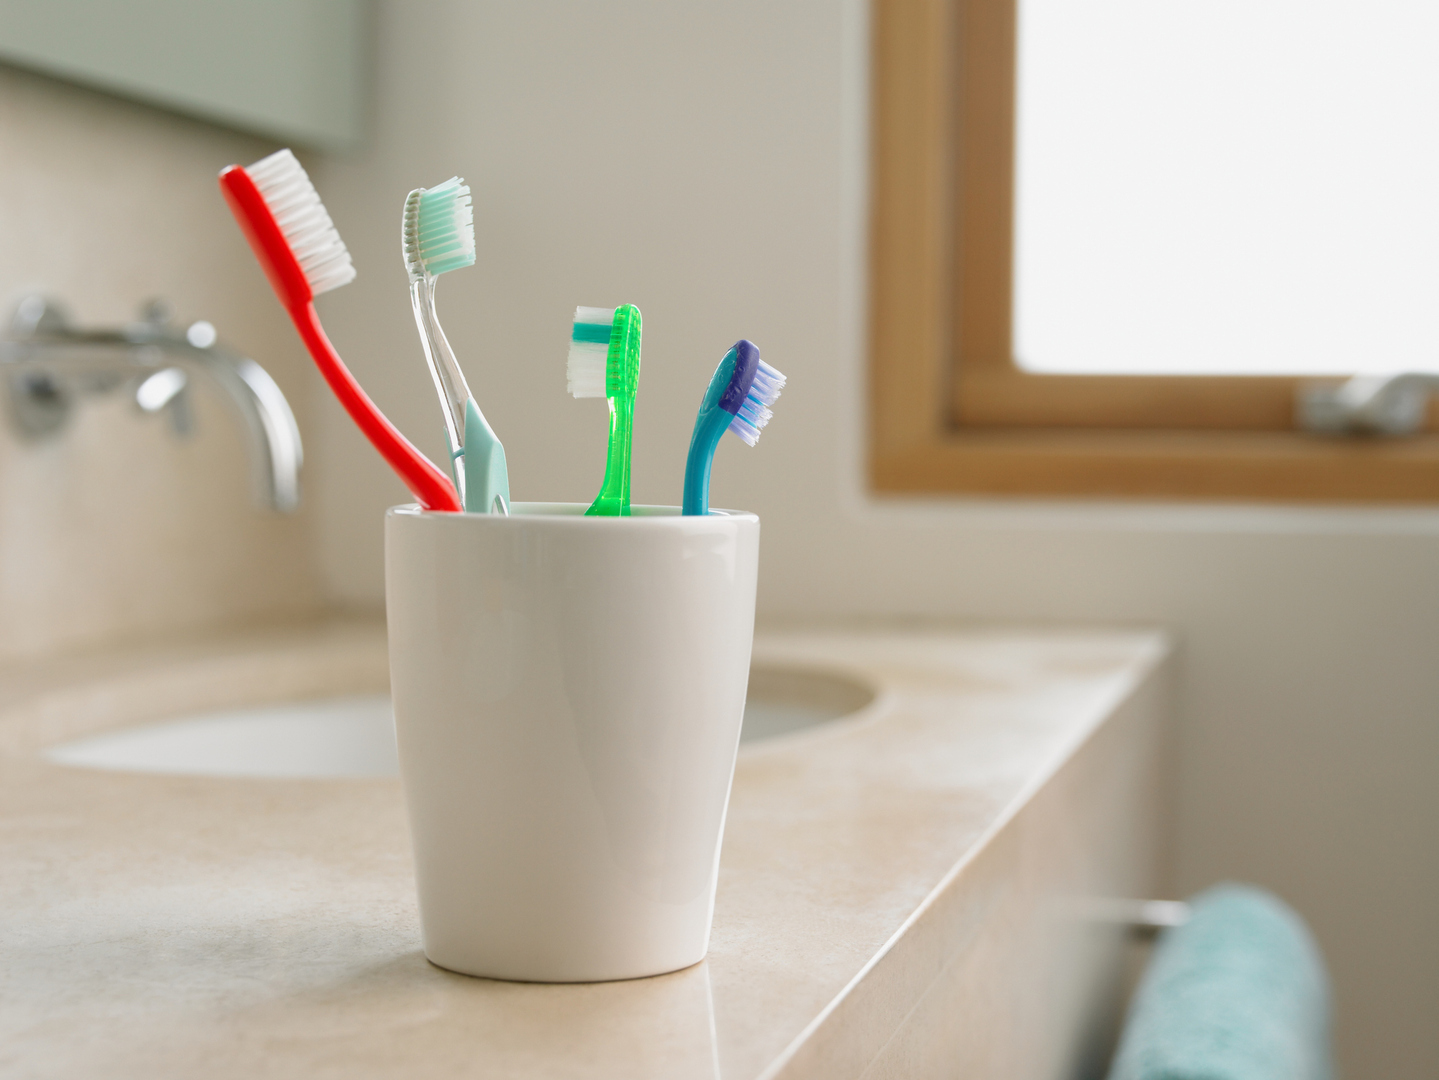 خبراء: خطر قاتل قد يهدد من يستخدم فرشاة الأسنان بشكل خاطئ